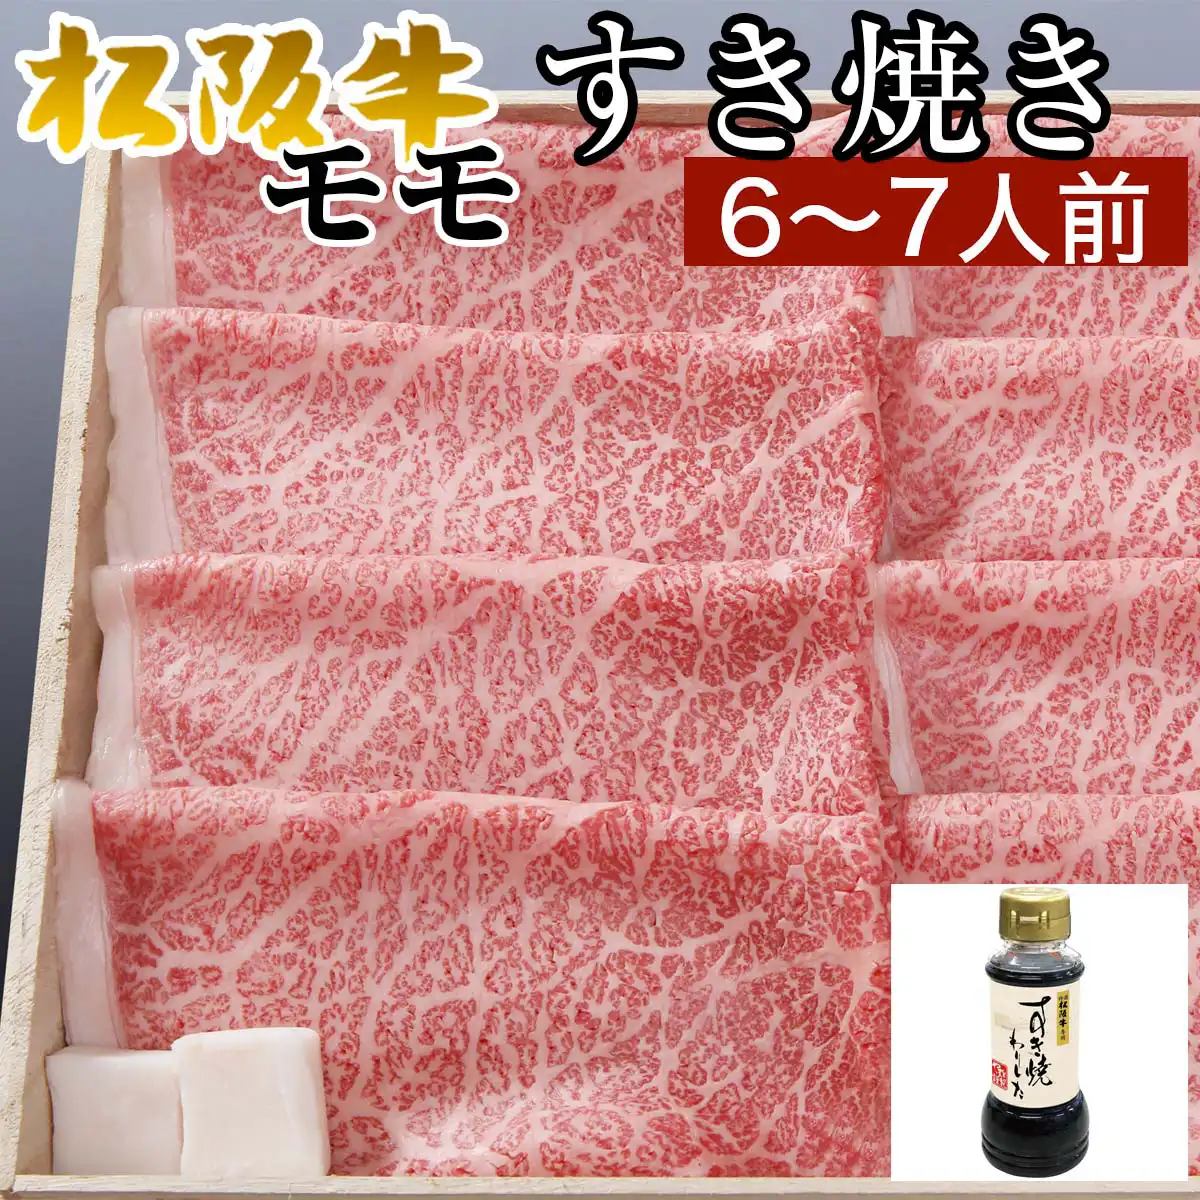 松阪牛モモすき焼き用700g